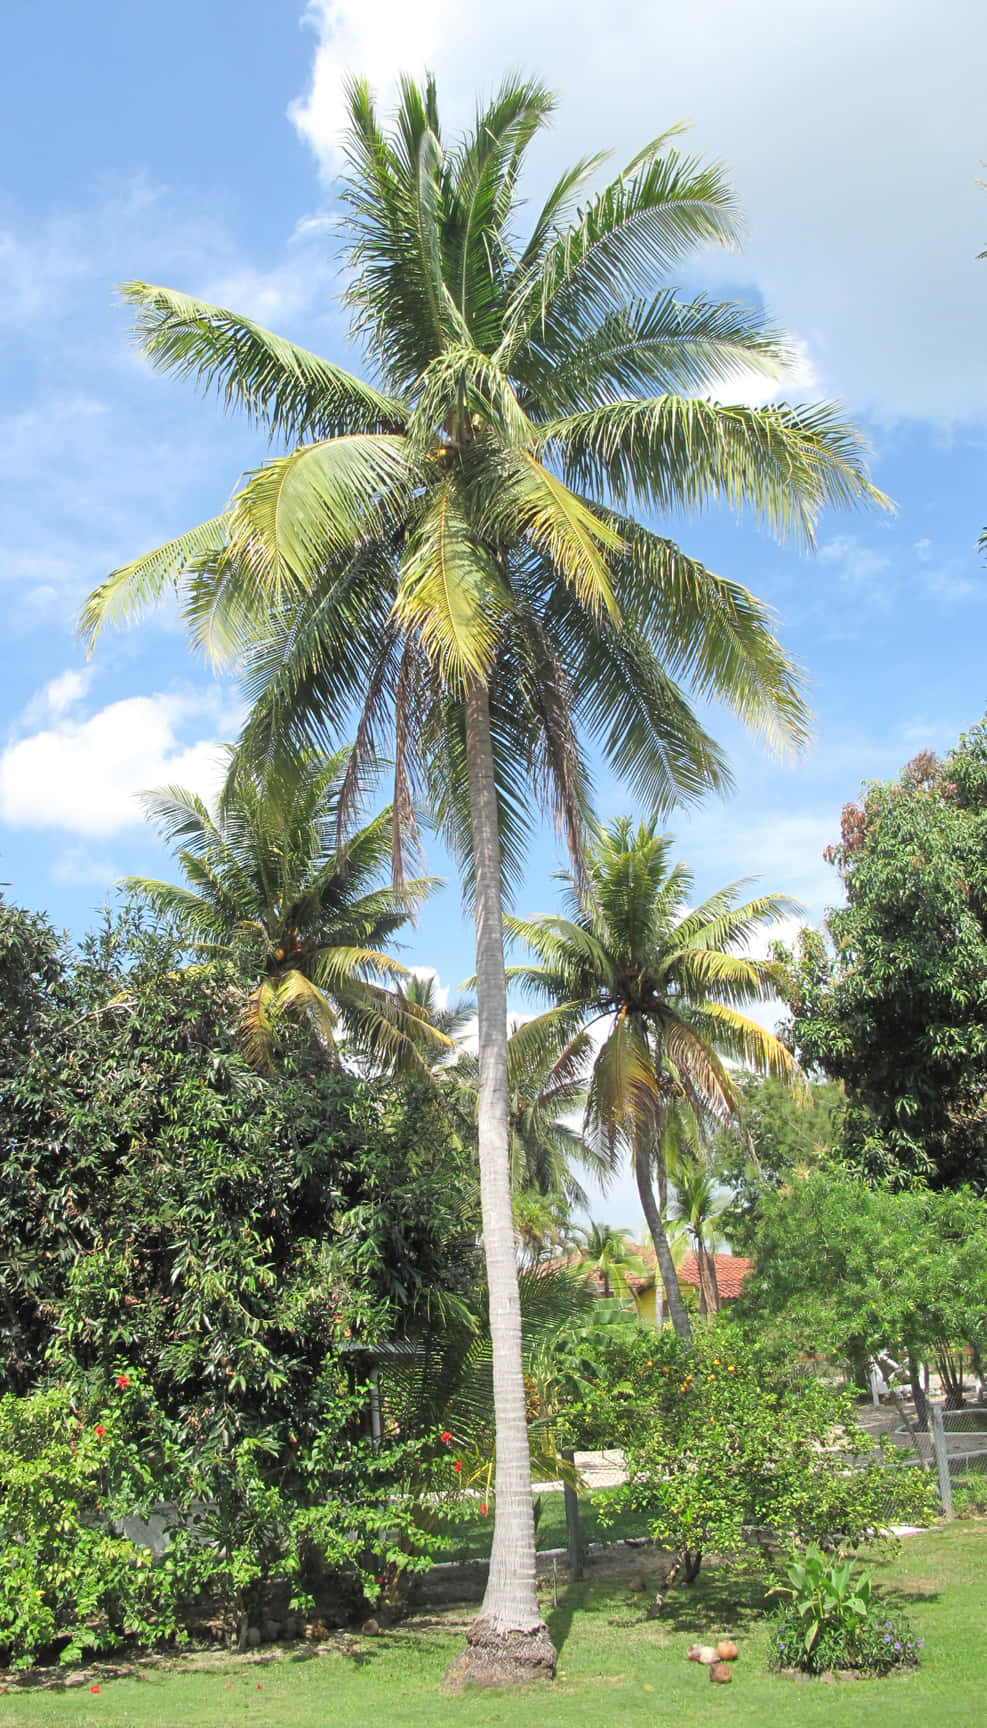 Njutav De Tropiska Vibbarna Med En Otrolig Vy Av Denna Kokospalm